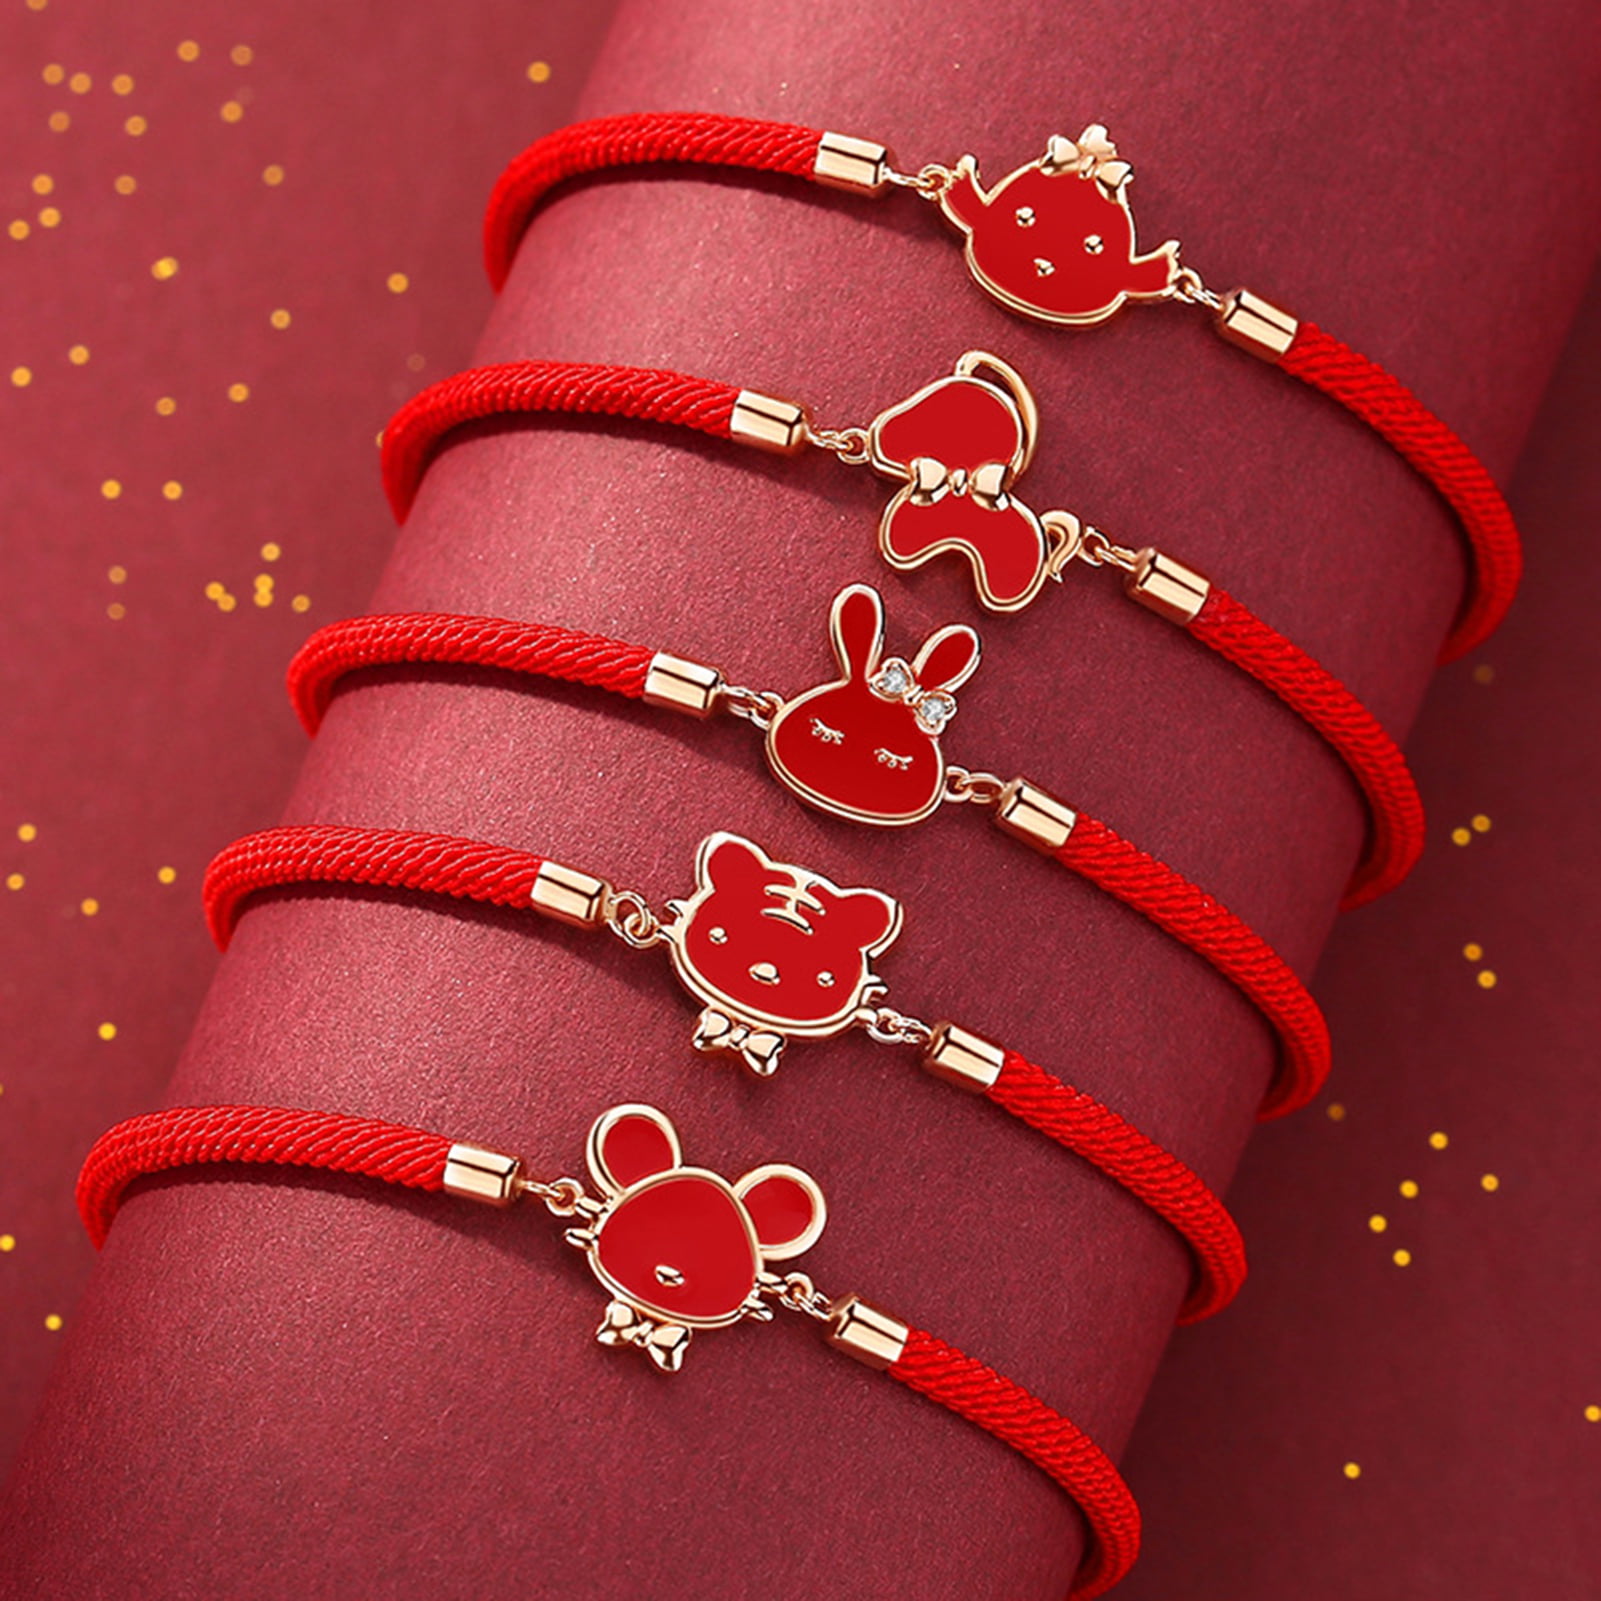 Artwork Store Adjustable Silver Bracelets Cartoon Cute Monkey Charming Fashion Chain Link Bracelets Jewelry for Women